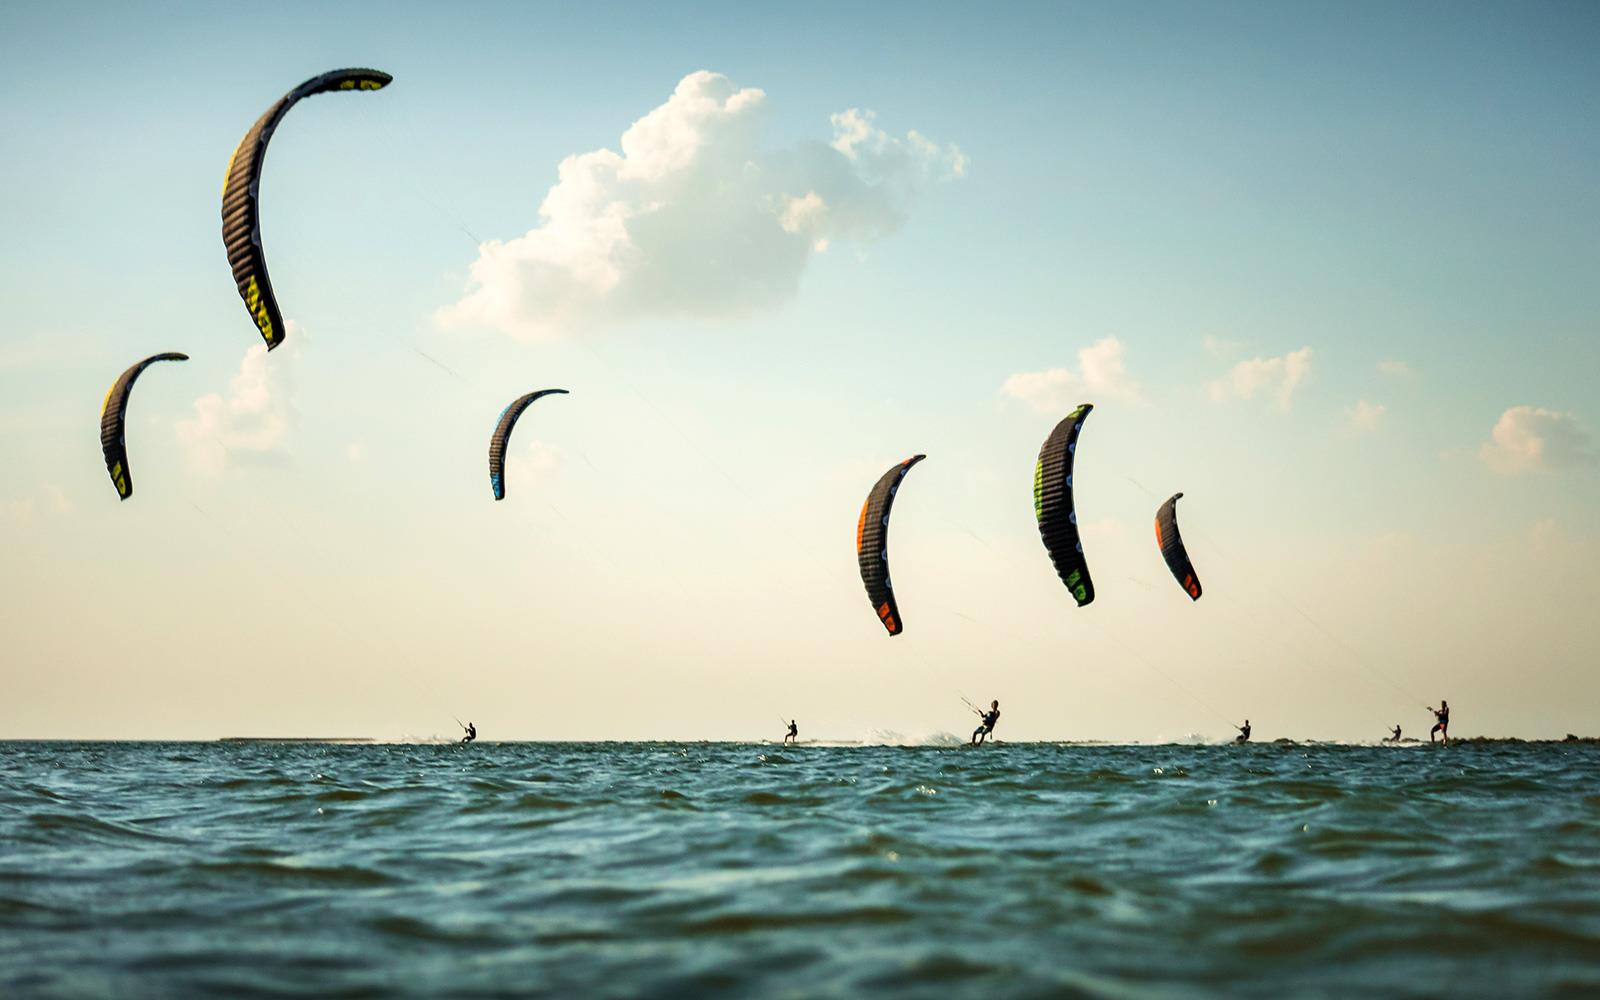 race-kite-hydrofoiling-Flysurfer.jpg